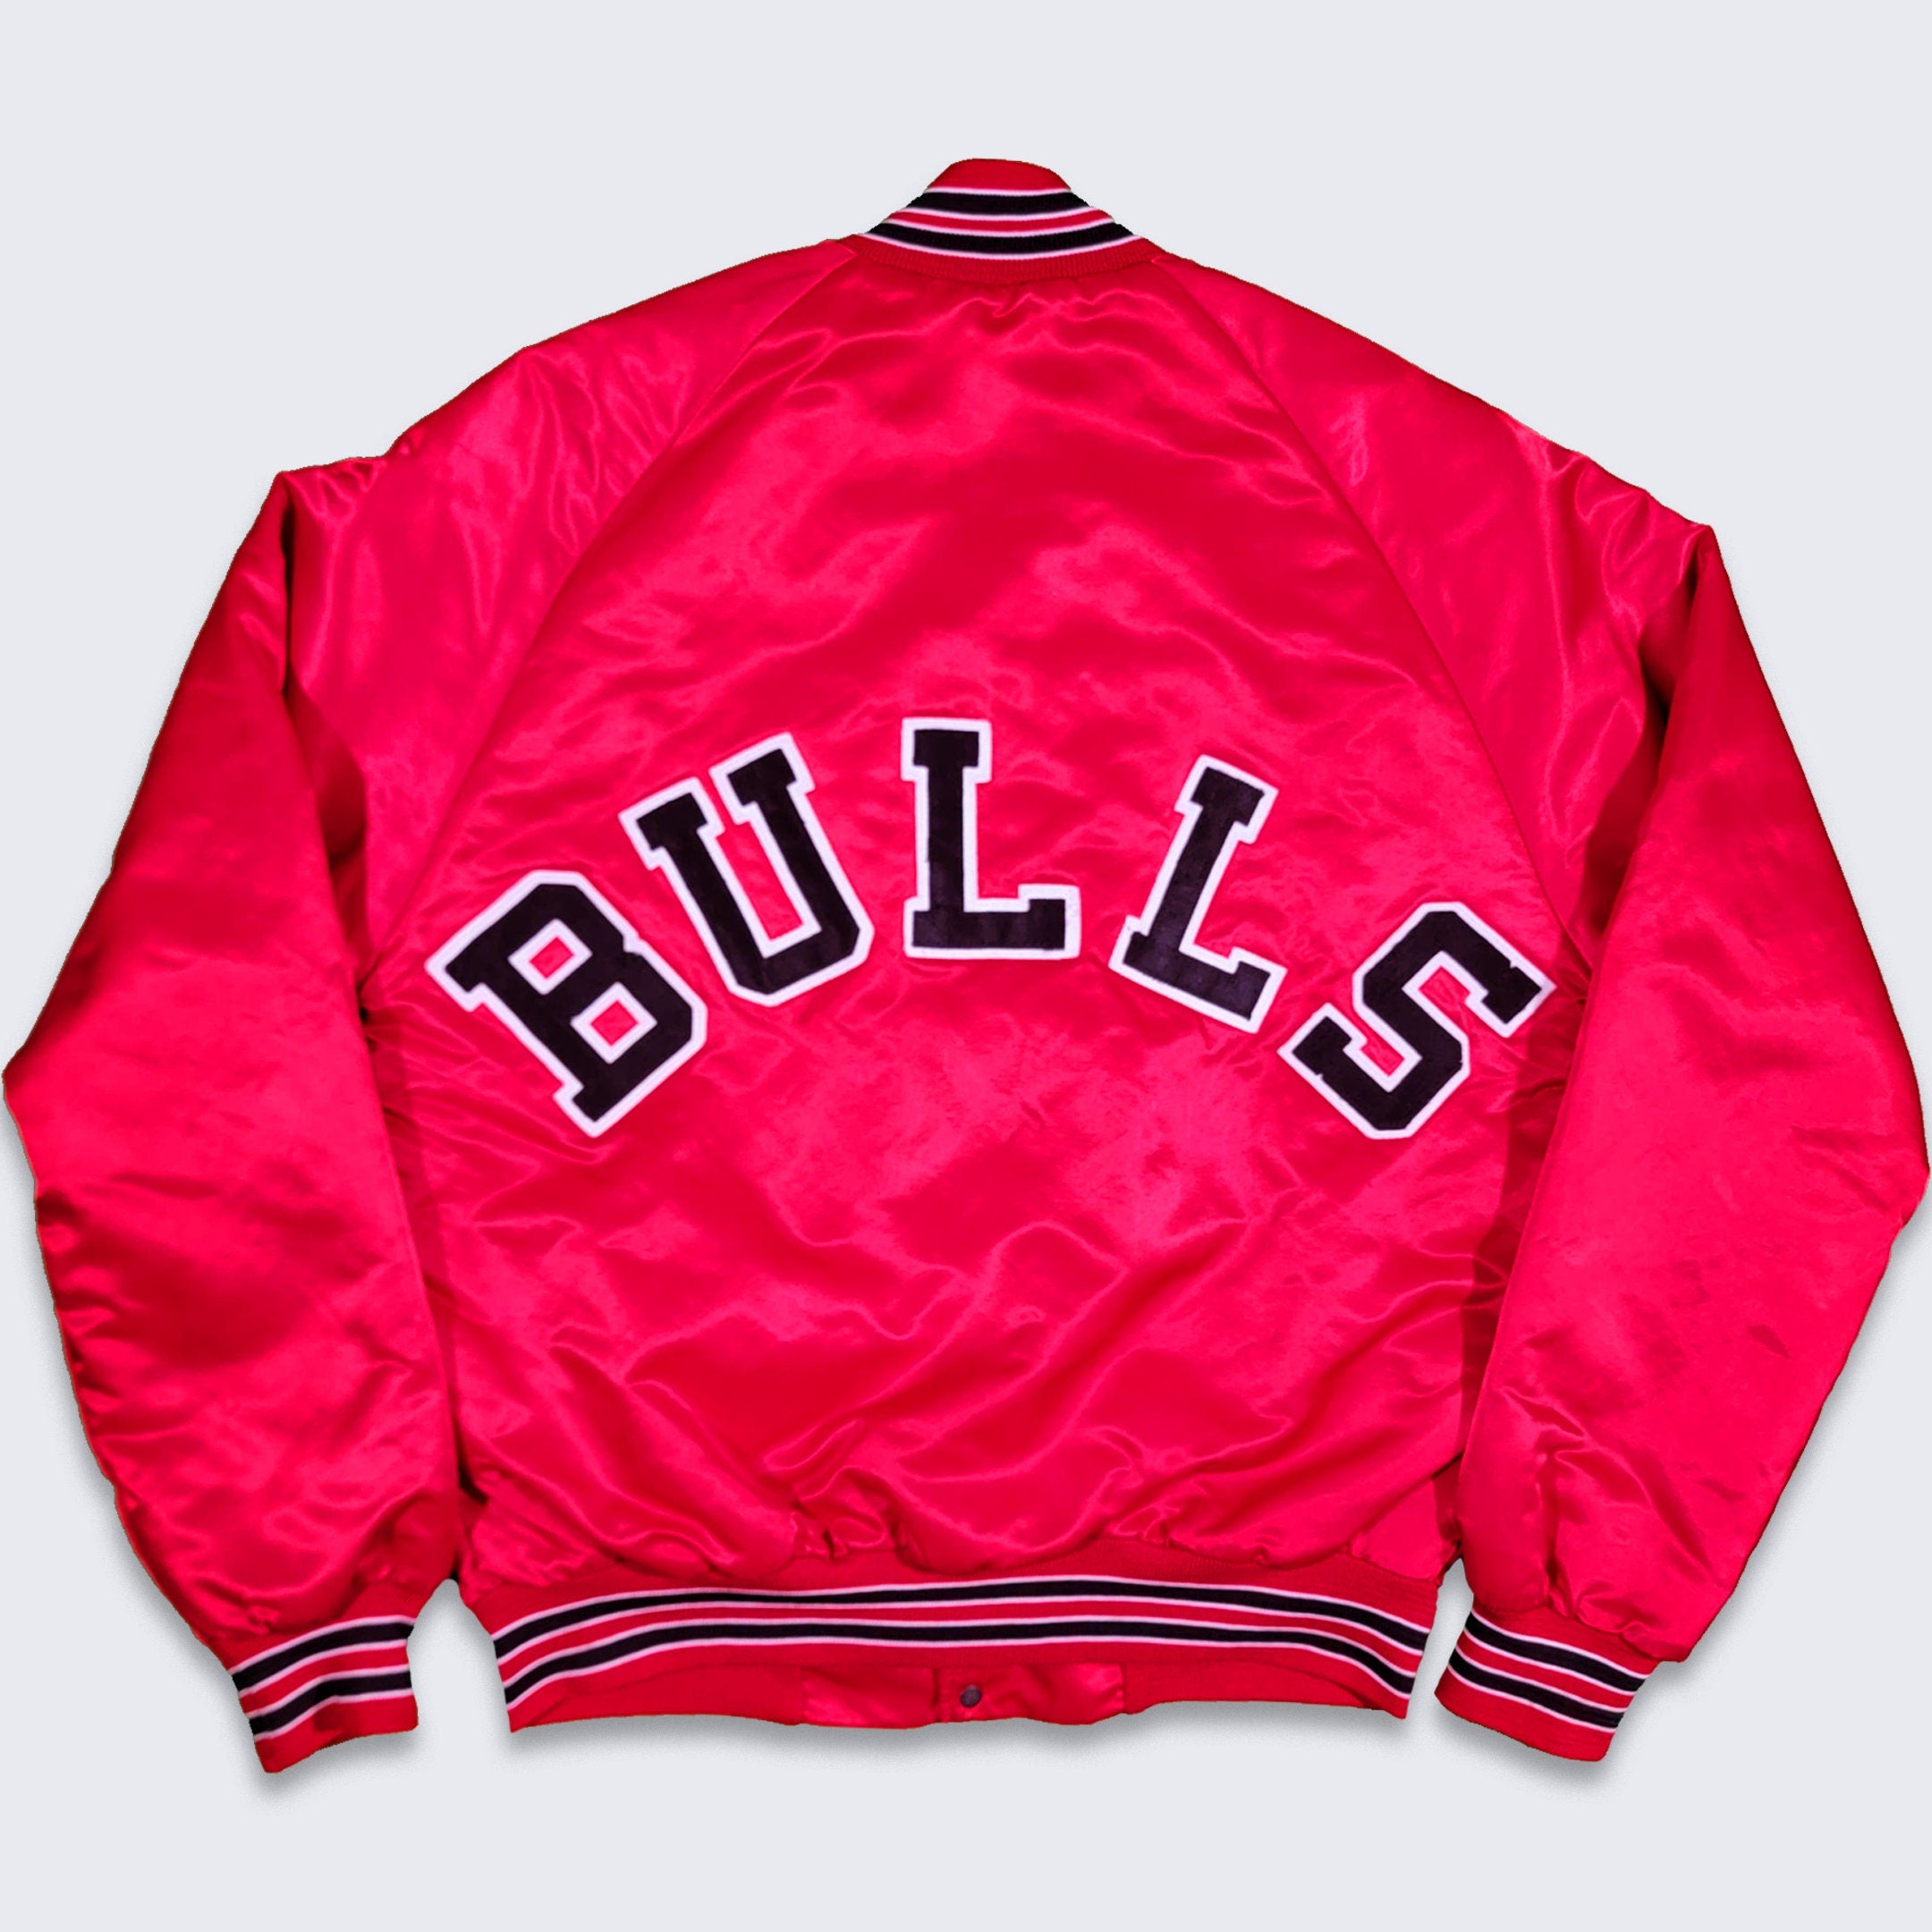 Vintage Starter Chicago Bulls NBA Satin Basketball Jacket Size XXXL 3X